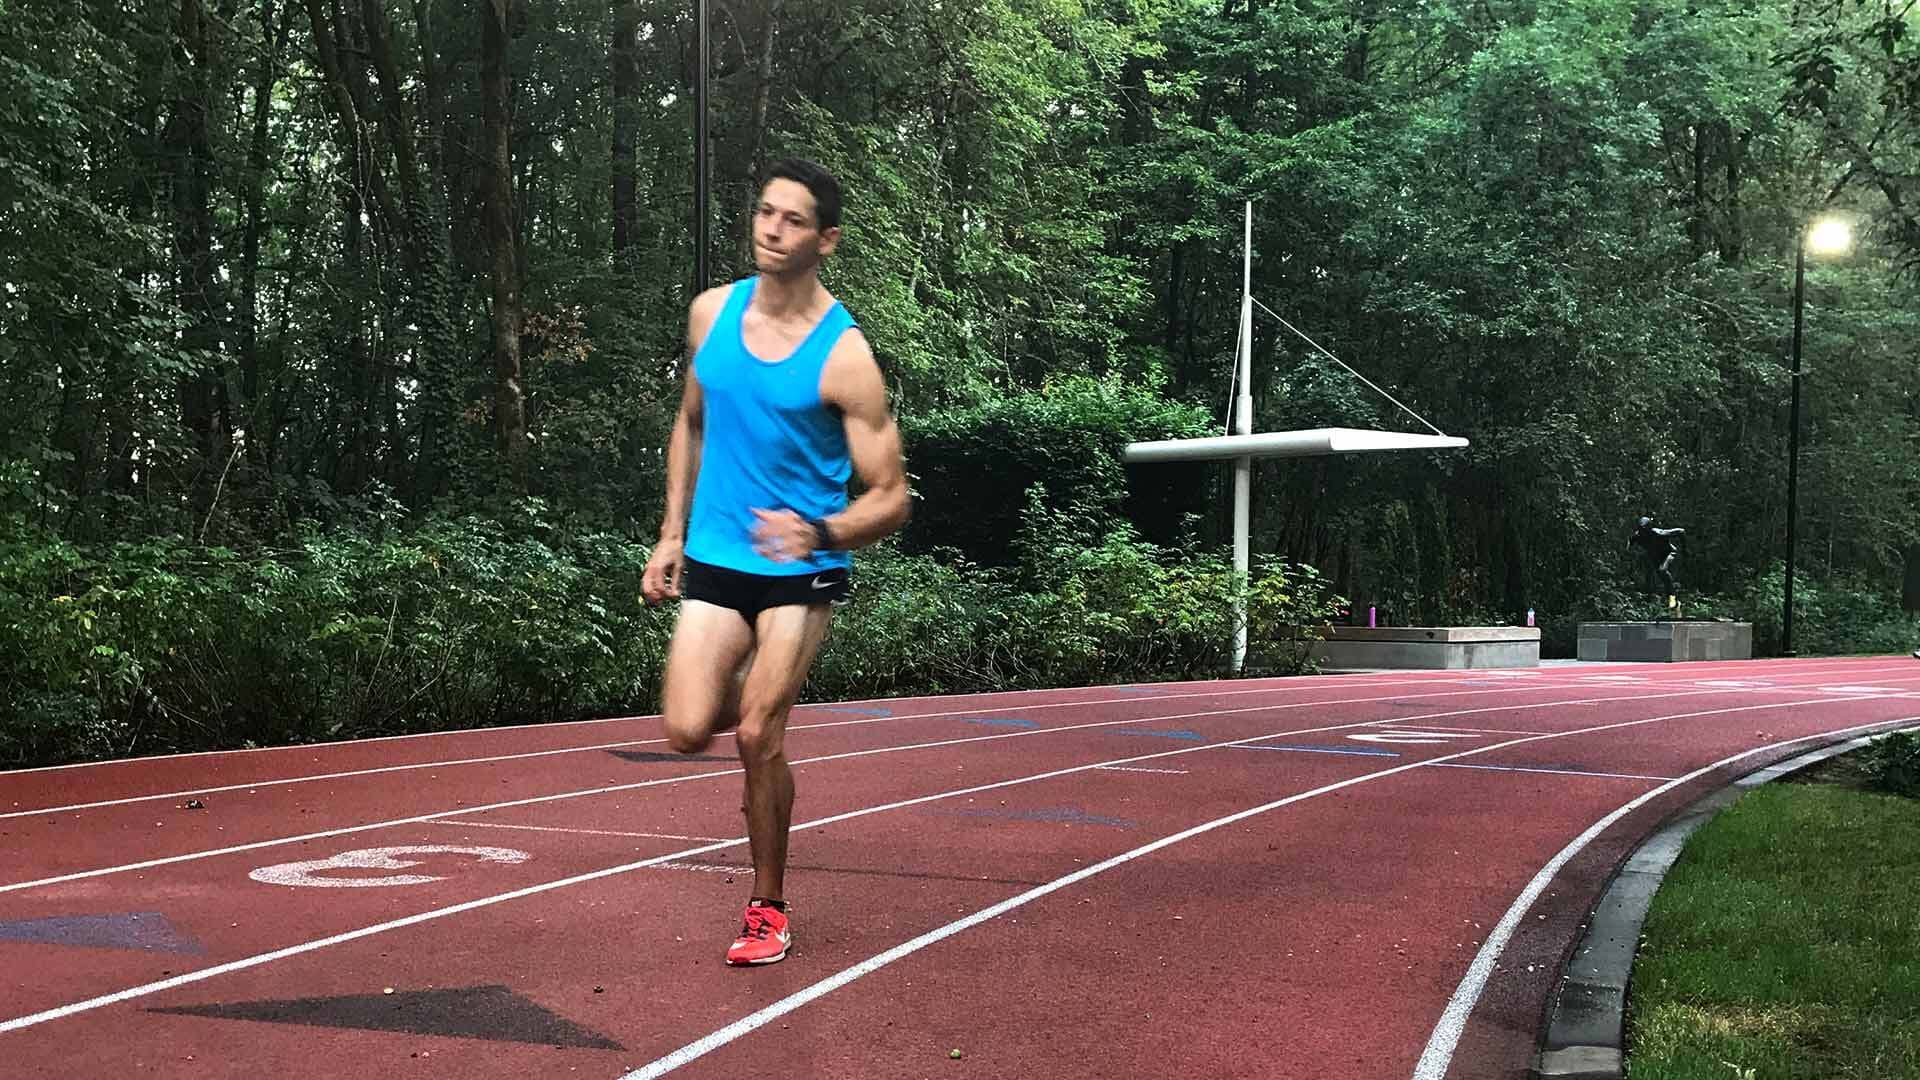 Jason Hershman ’11 runs on a track